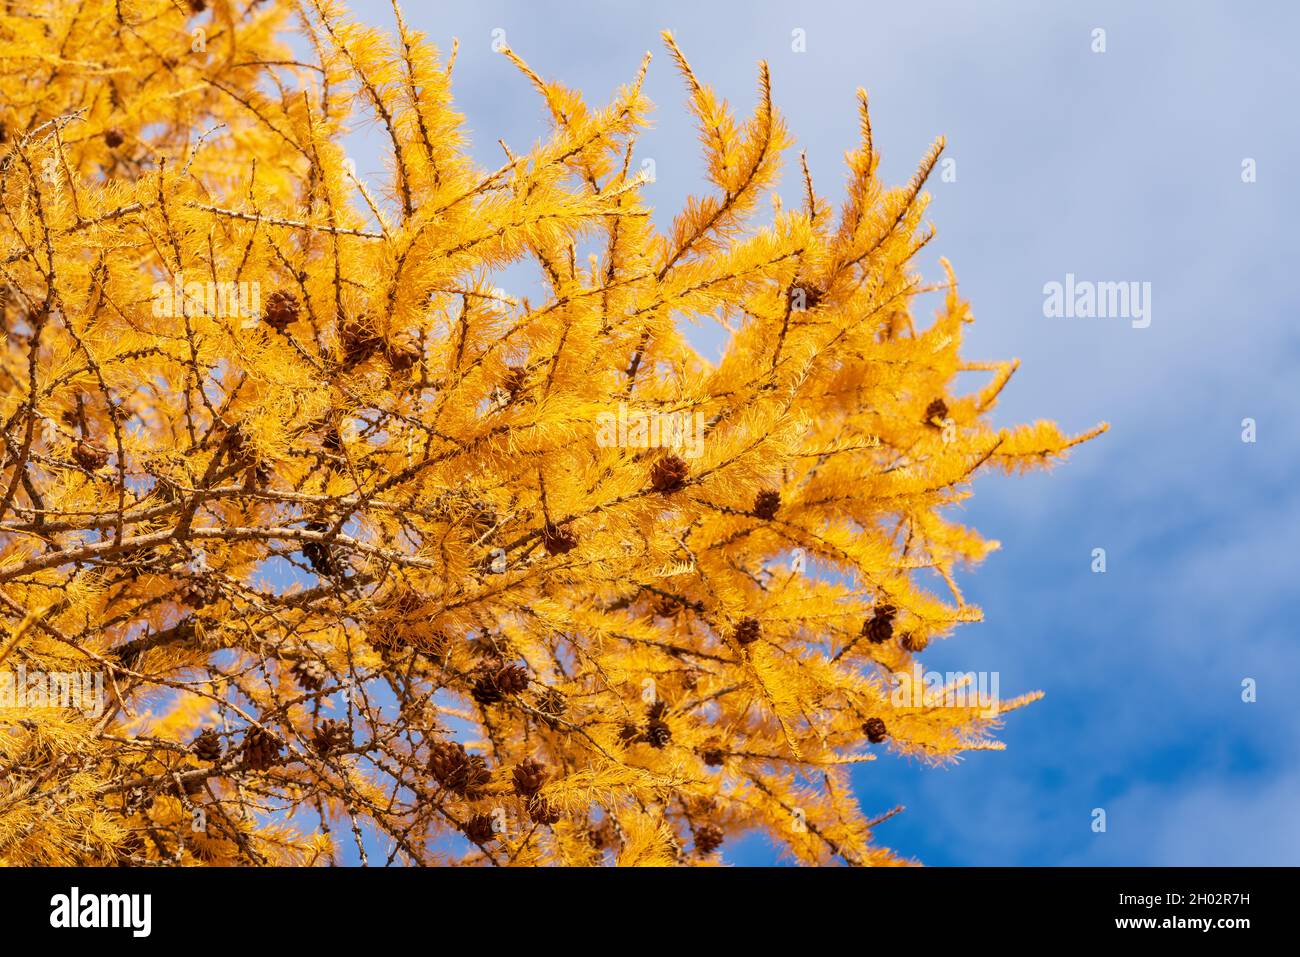 Branche jaune d'automne de l'arbre Larch Larix decidua avec des cônes de pin sur fond de ciel bleu avec des nuages.Conifères par temps ensoleillé. Banque D'Images